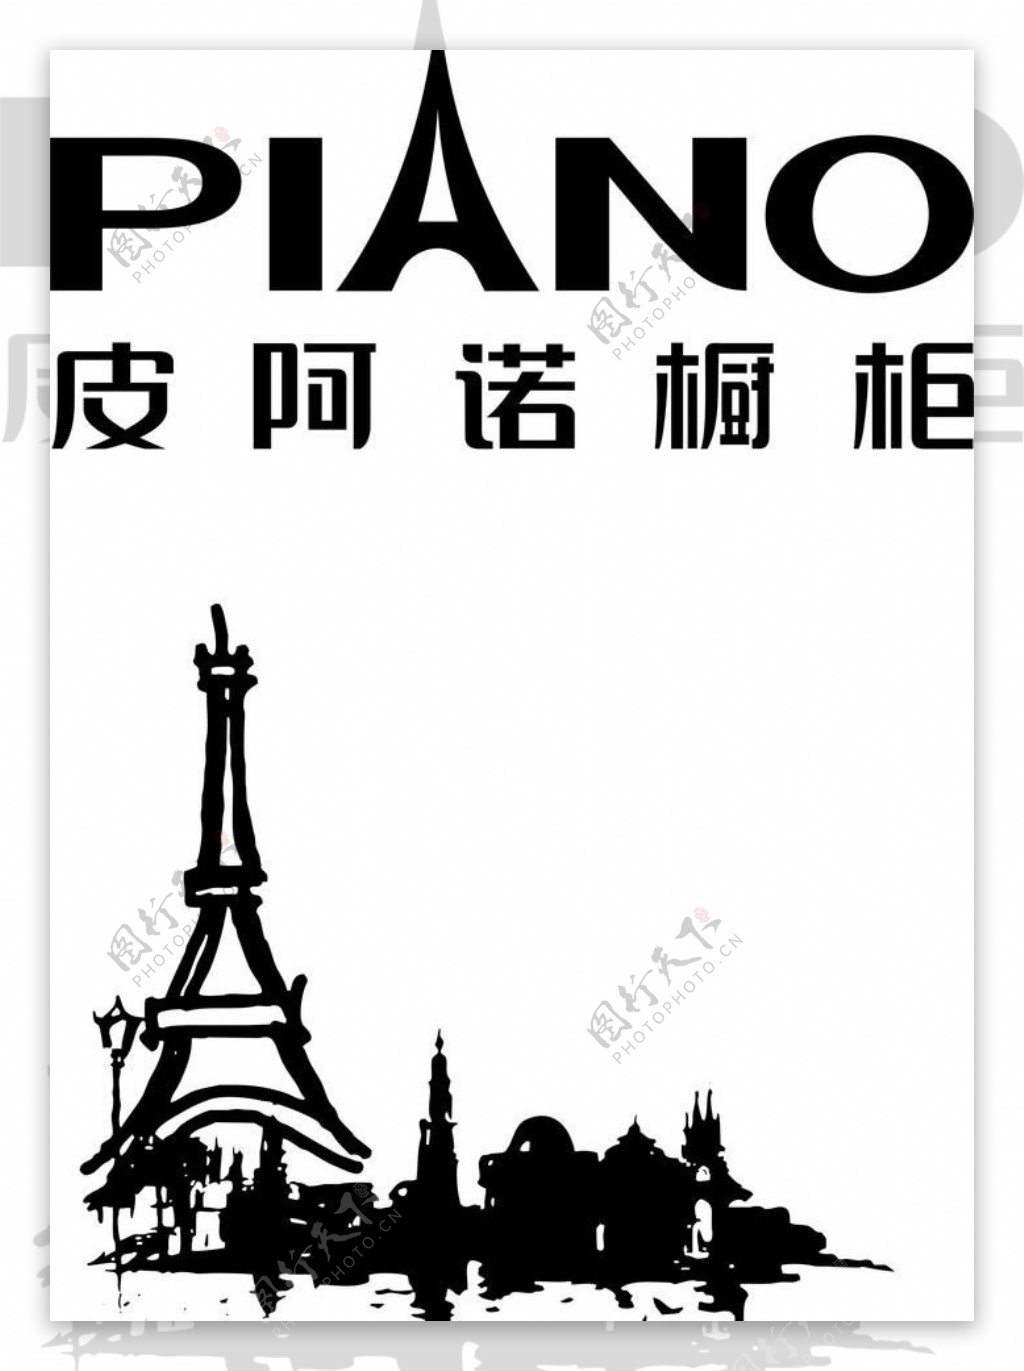 皮阿诺橱柜logo图片